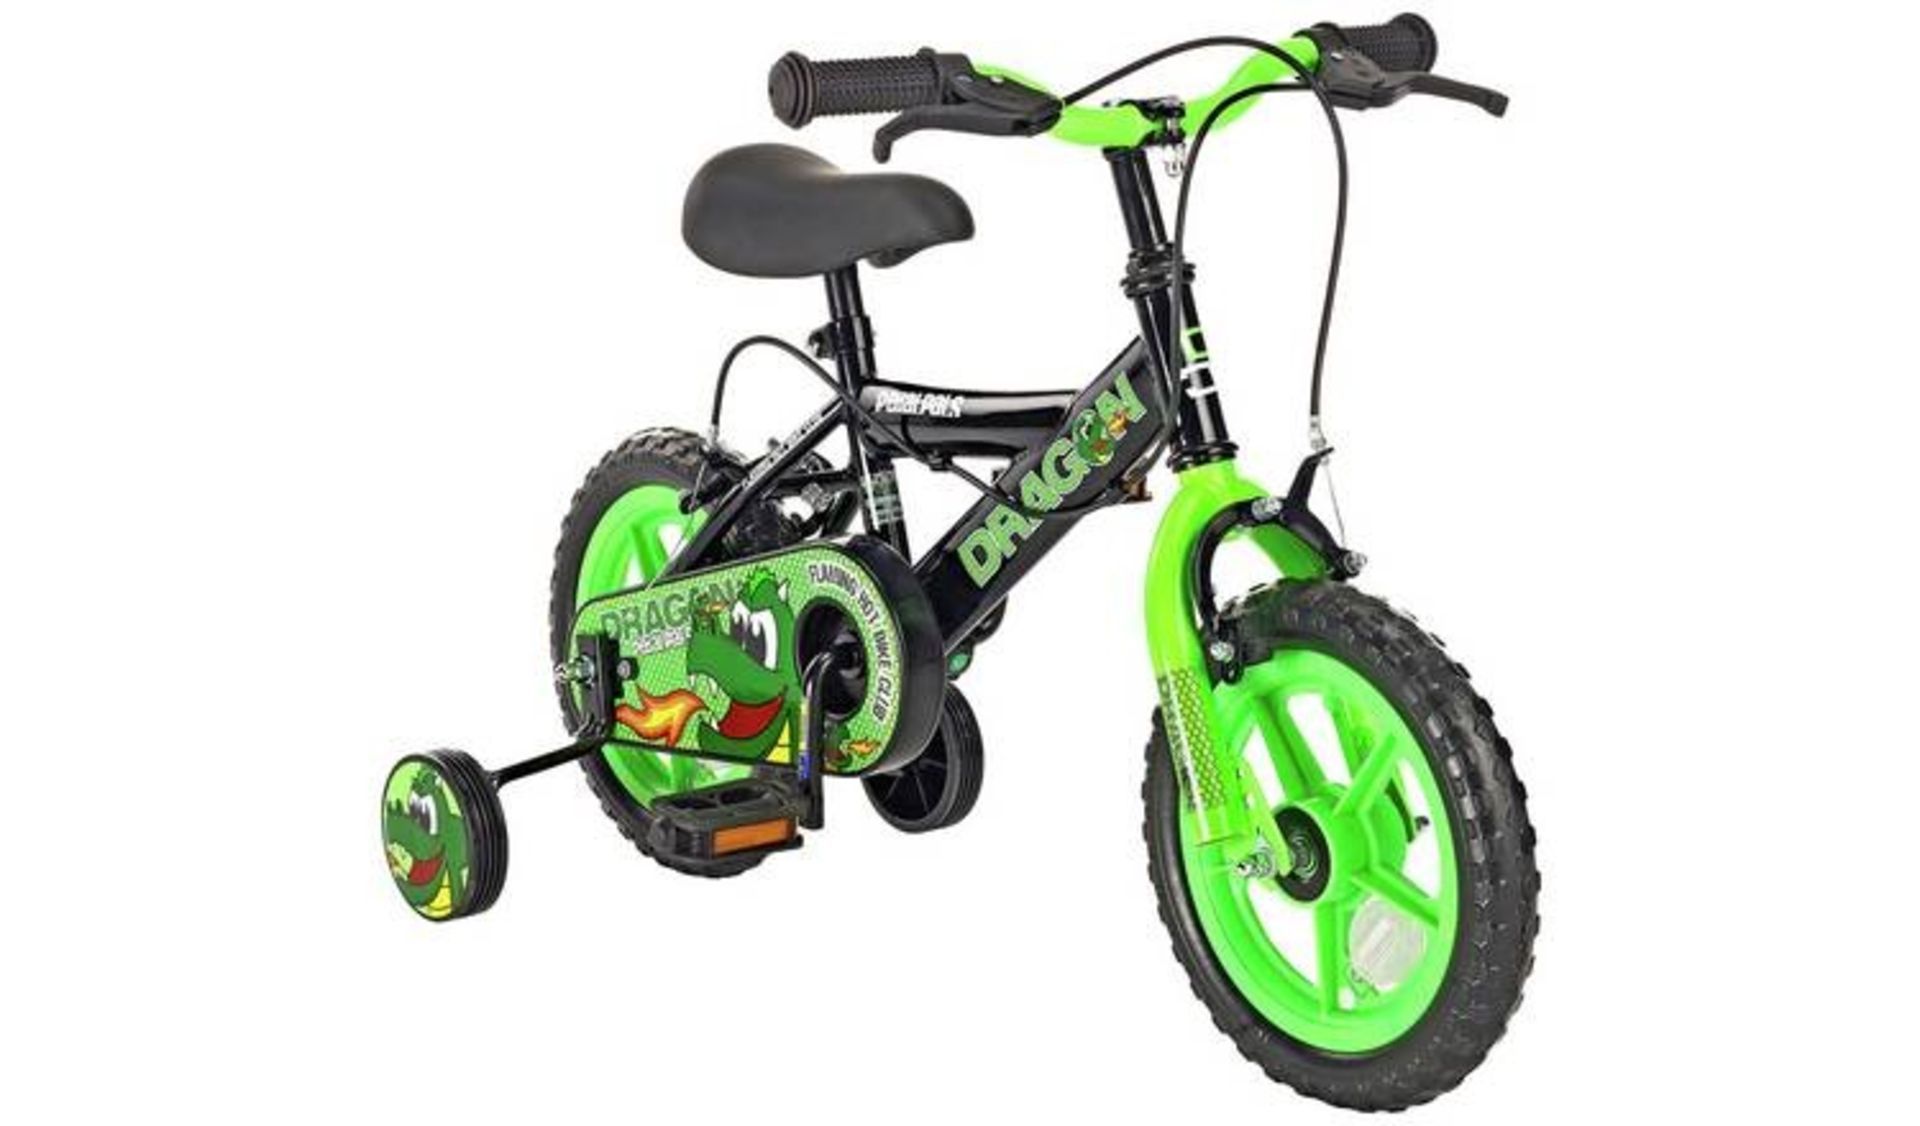 Pedal Pals Dragon 12 inch Wheel Size Kids Mountain Bike (LOCATION - PW) 3